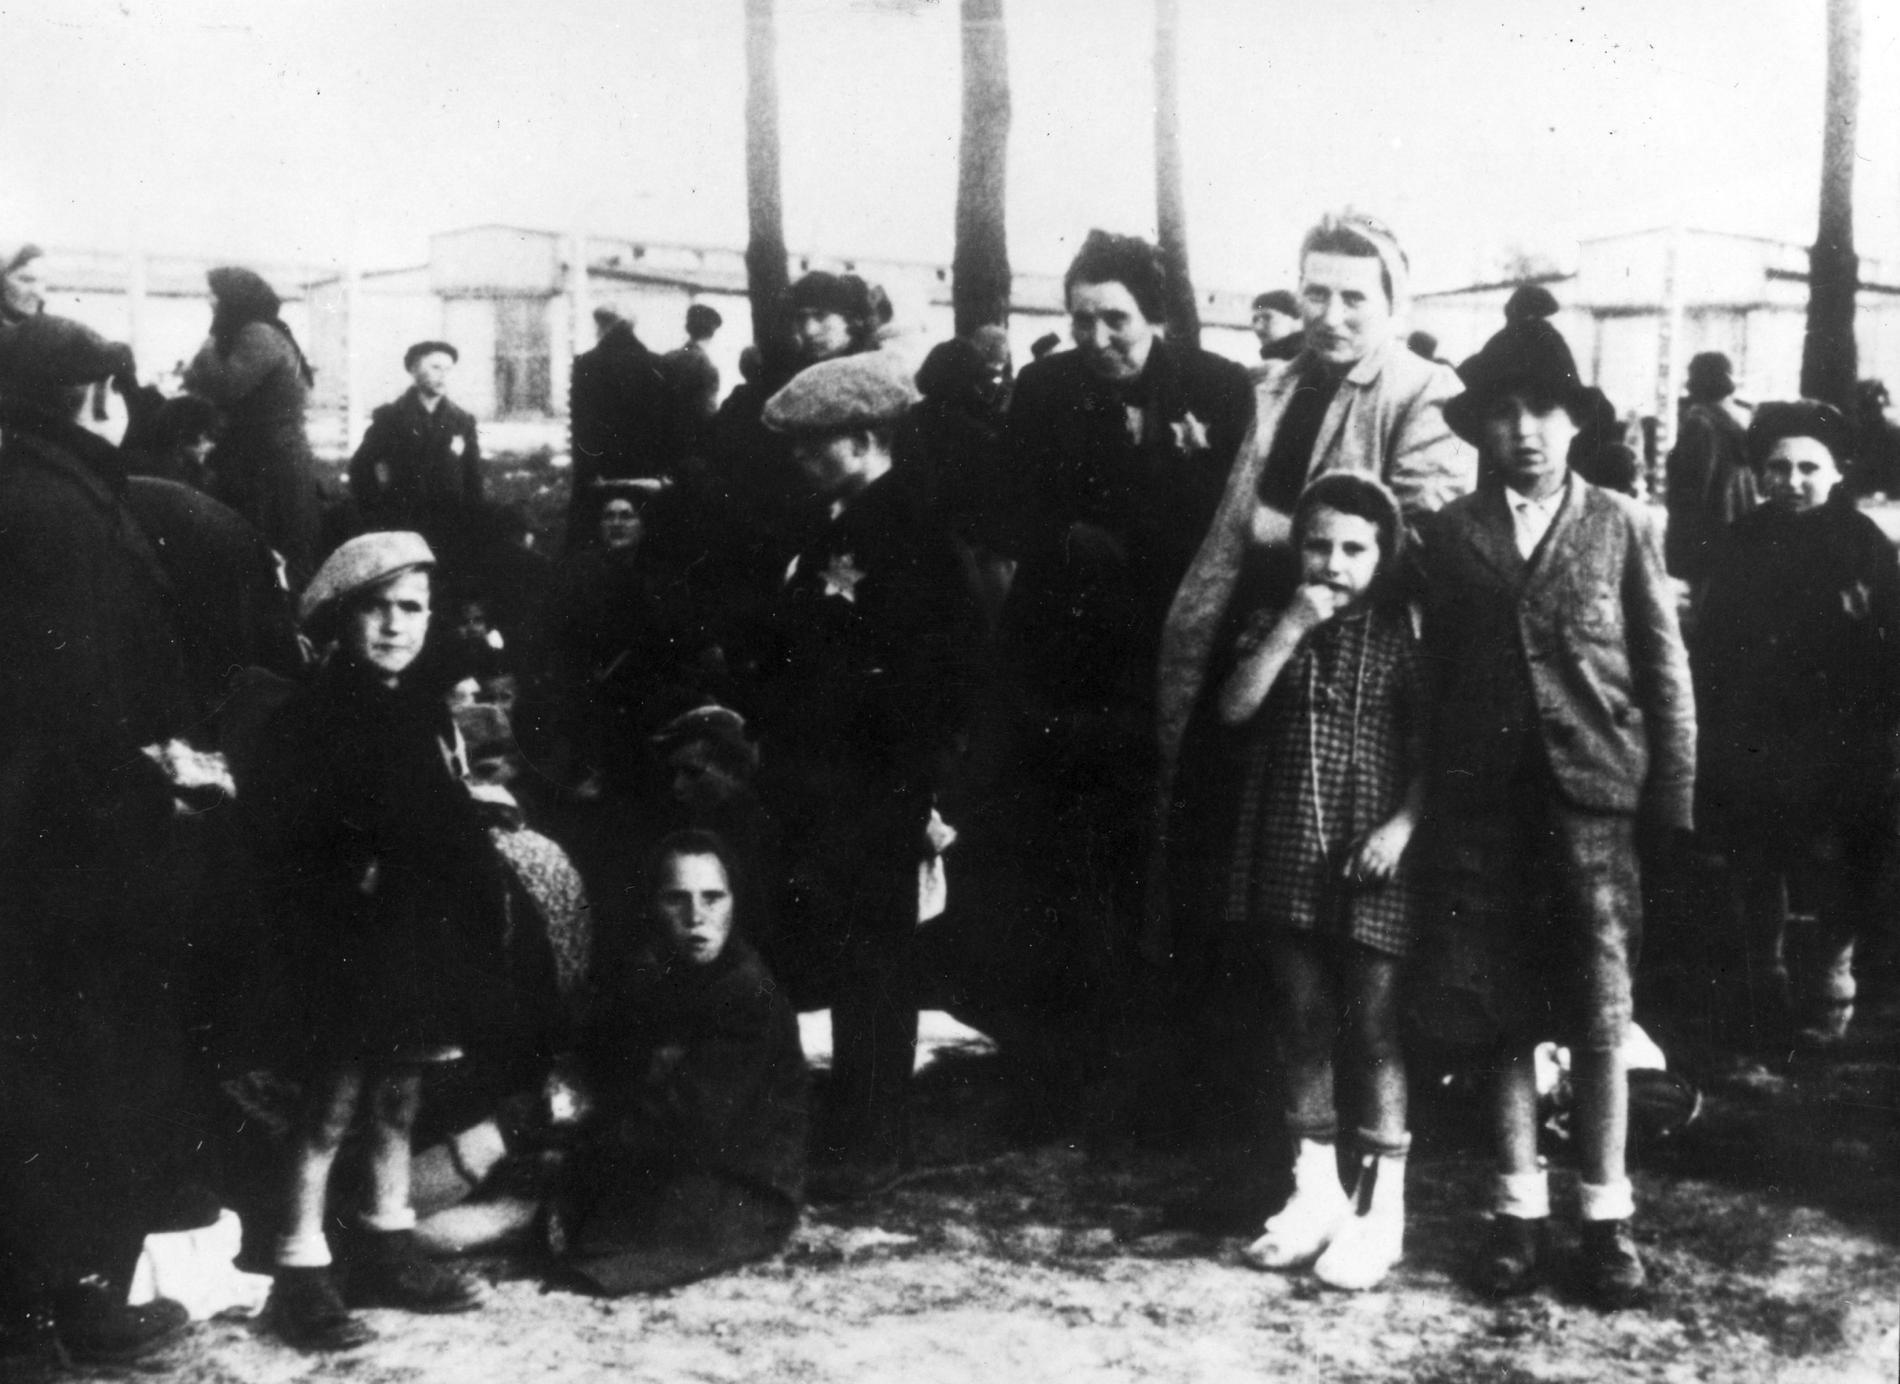 I dag är det den internationella minnesdagen för Förintelsens offer. Sex miljoner judar mördades i bland annat Auschwitz-Birkenau.